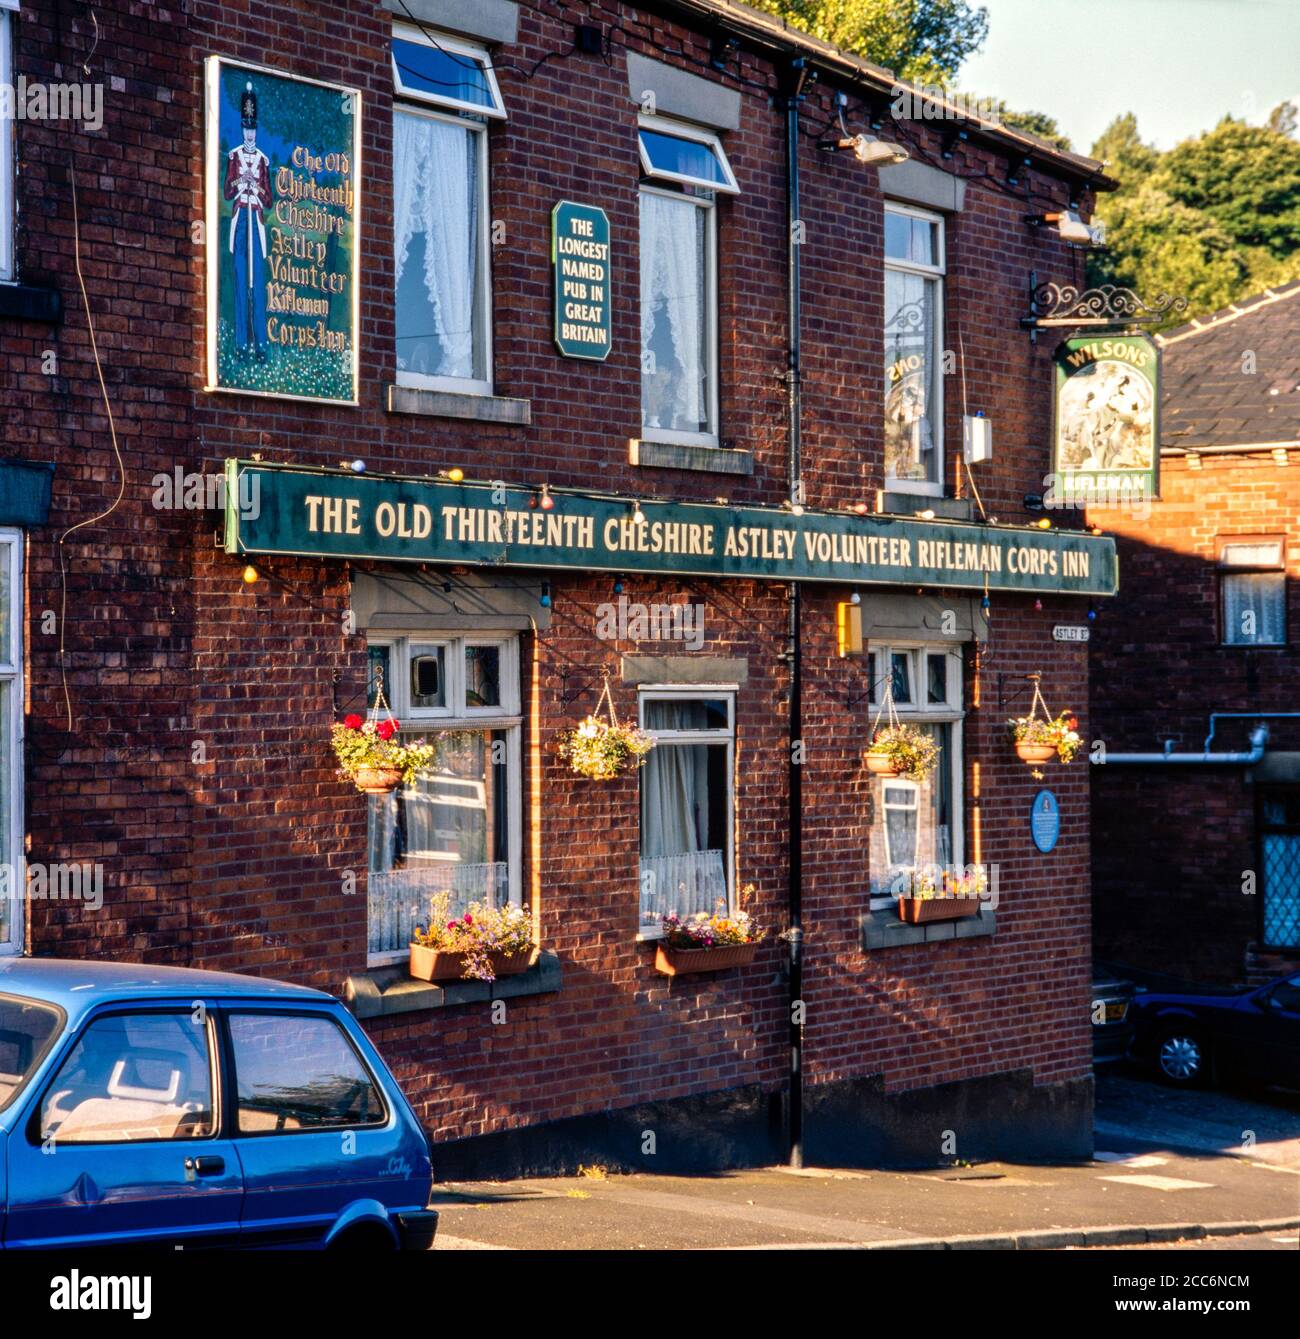 Pub avec le plus long nom au Royaume-Uni, The Old Thirteenth Cheshire Astley Volunteer Riflemen corps Inn, juillet 1999. Stalybridge, Tameside, Manchester, Royaume-Uni Banque D'Images